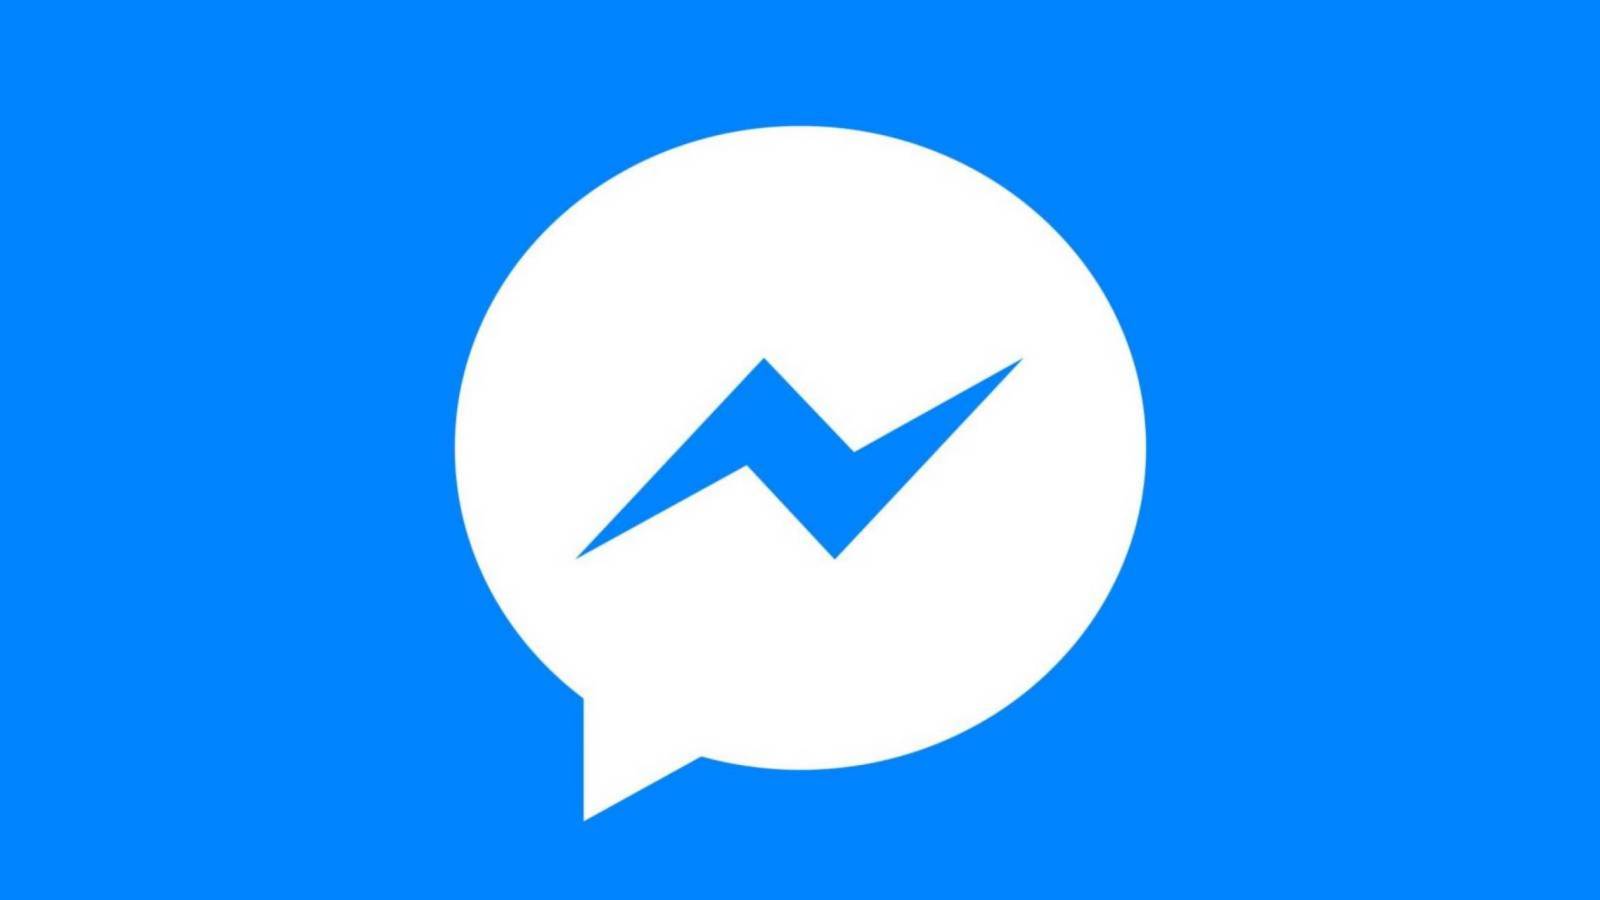 Facebook Messenger Nuovo aggiornamento disponibile per gli utenti